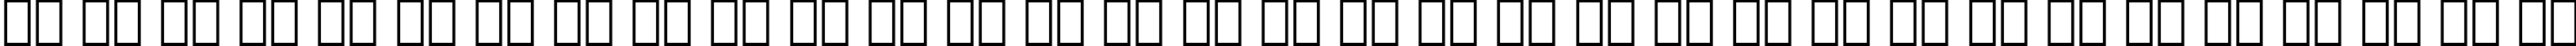 Пример написания русского алфавита шрифтом Geometric 415 Medium Italic BT